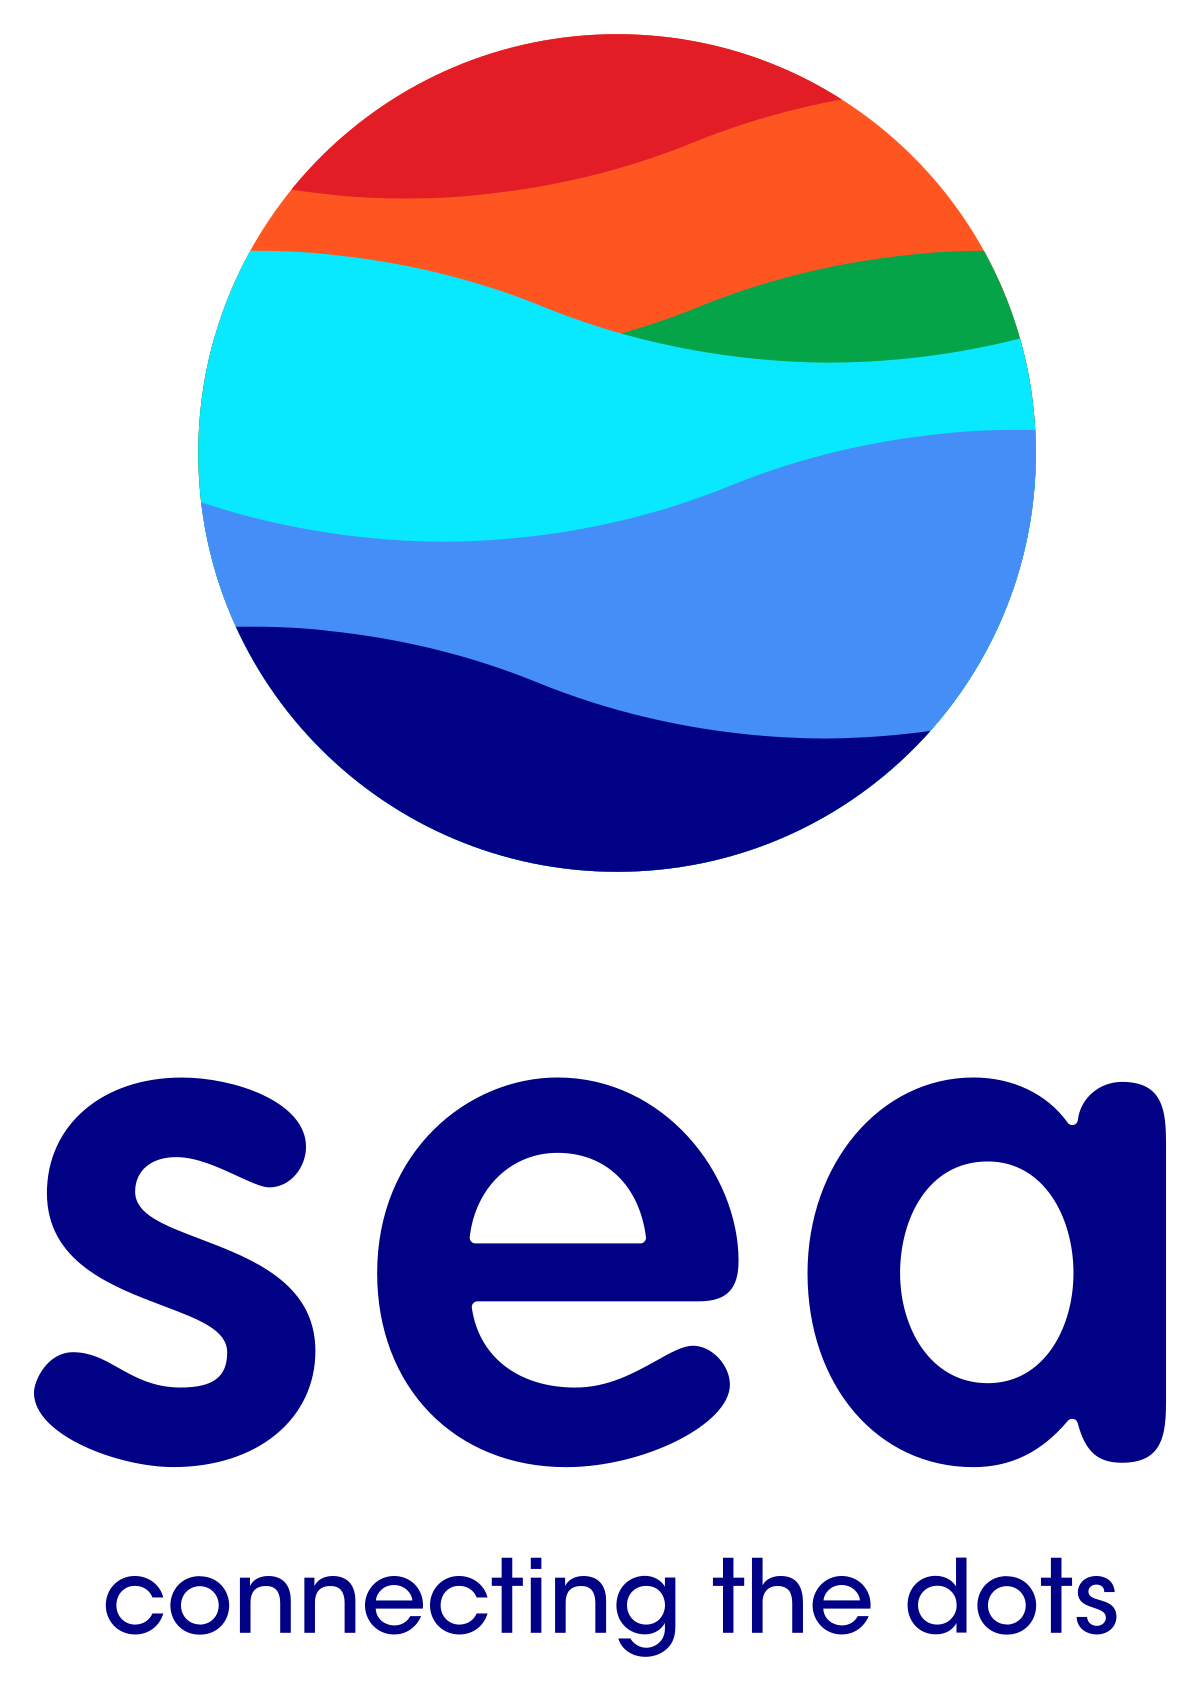 Sea Ltd - Wikipedia